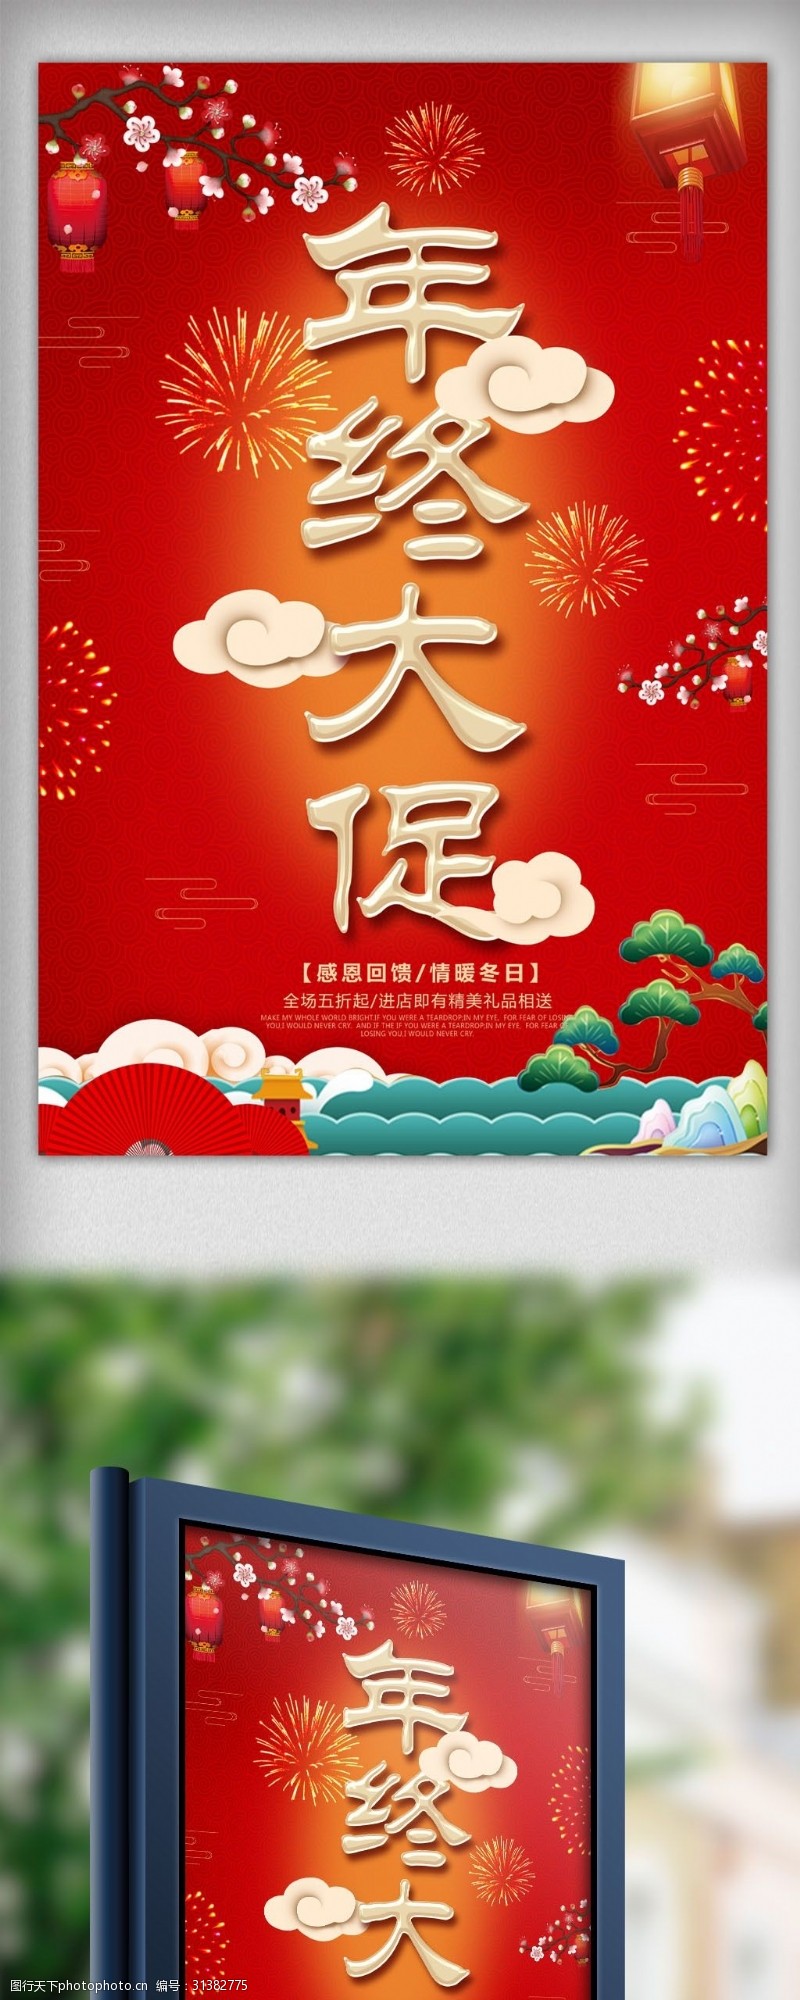 开元大街中国风年终大促超市促销海报设计